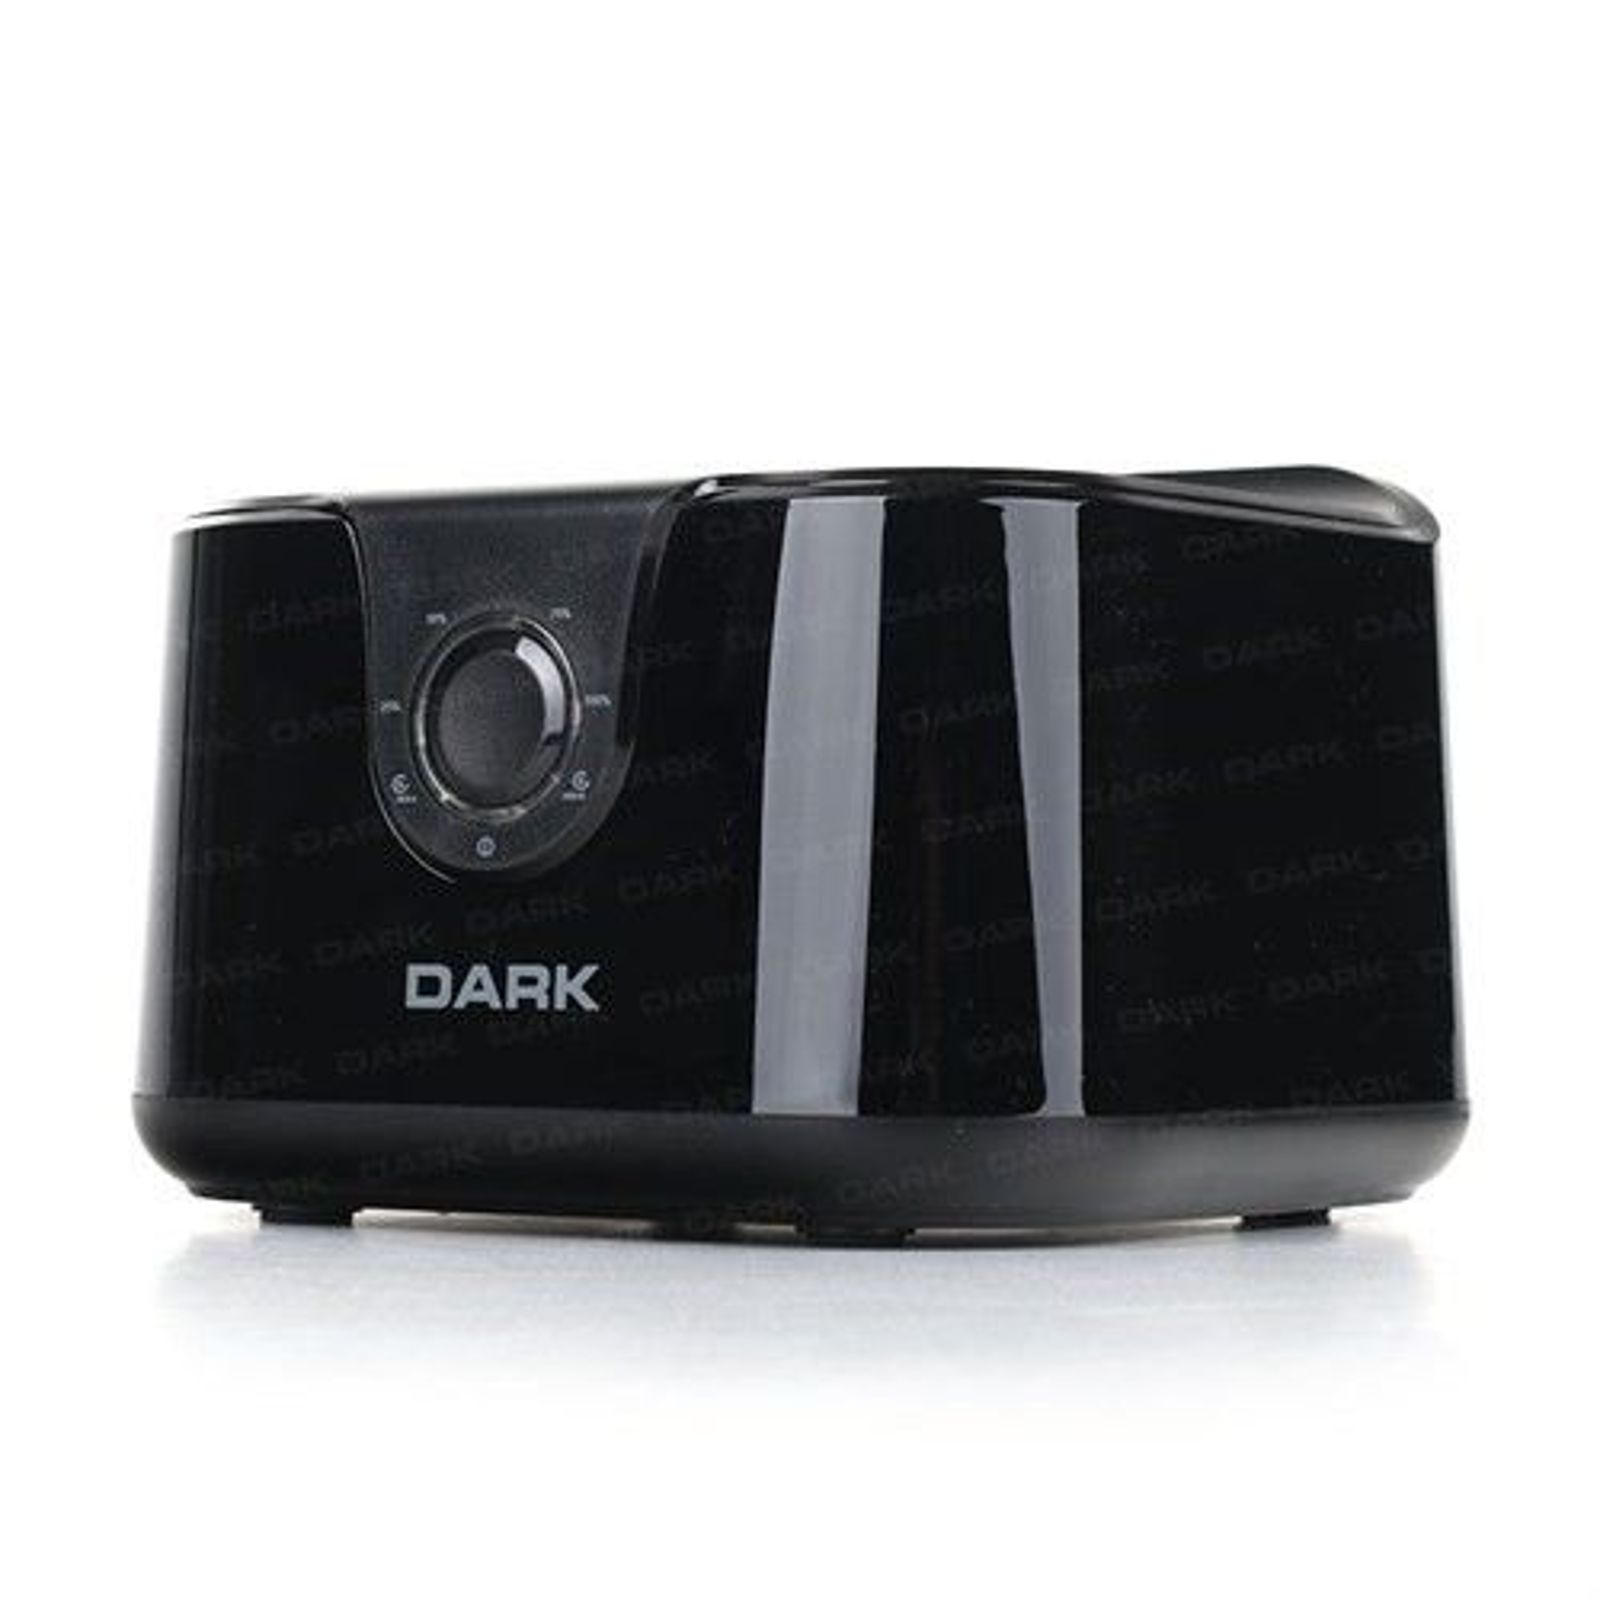 DARK DK-AC-DSD24C 3.5" USB 3.0 SATA DOCKING STATION